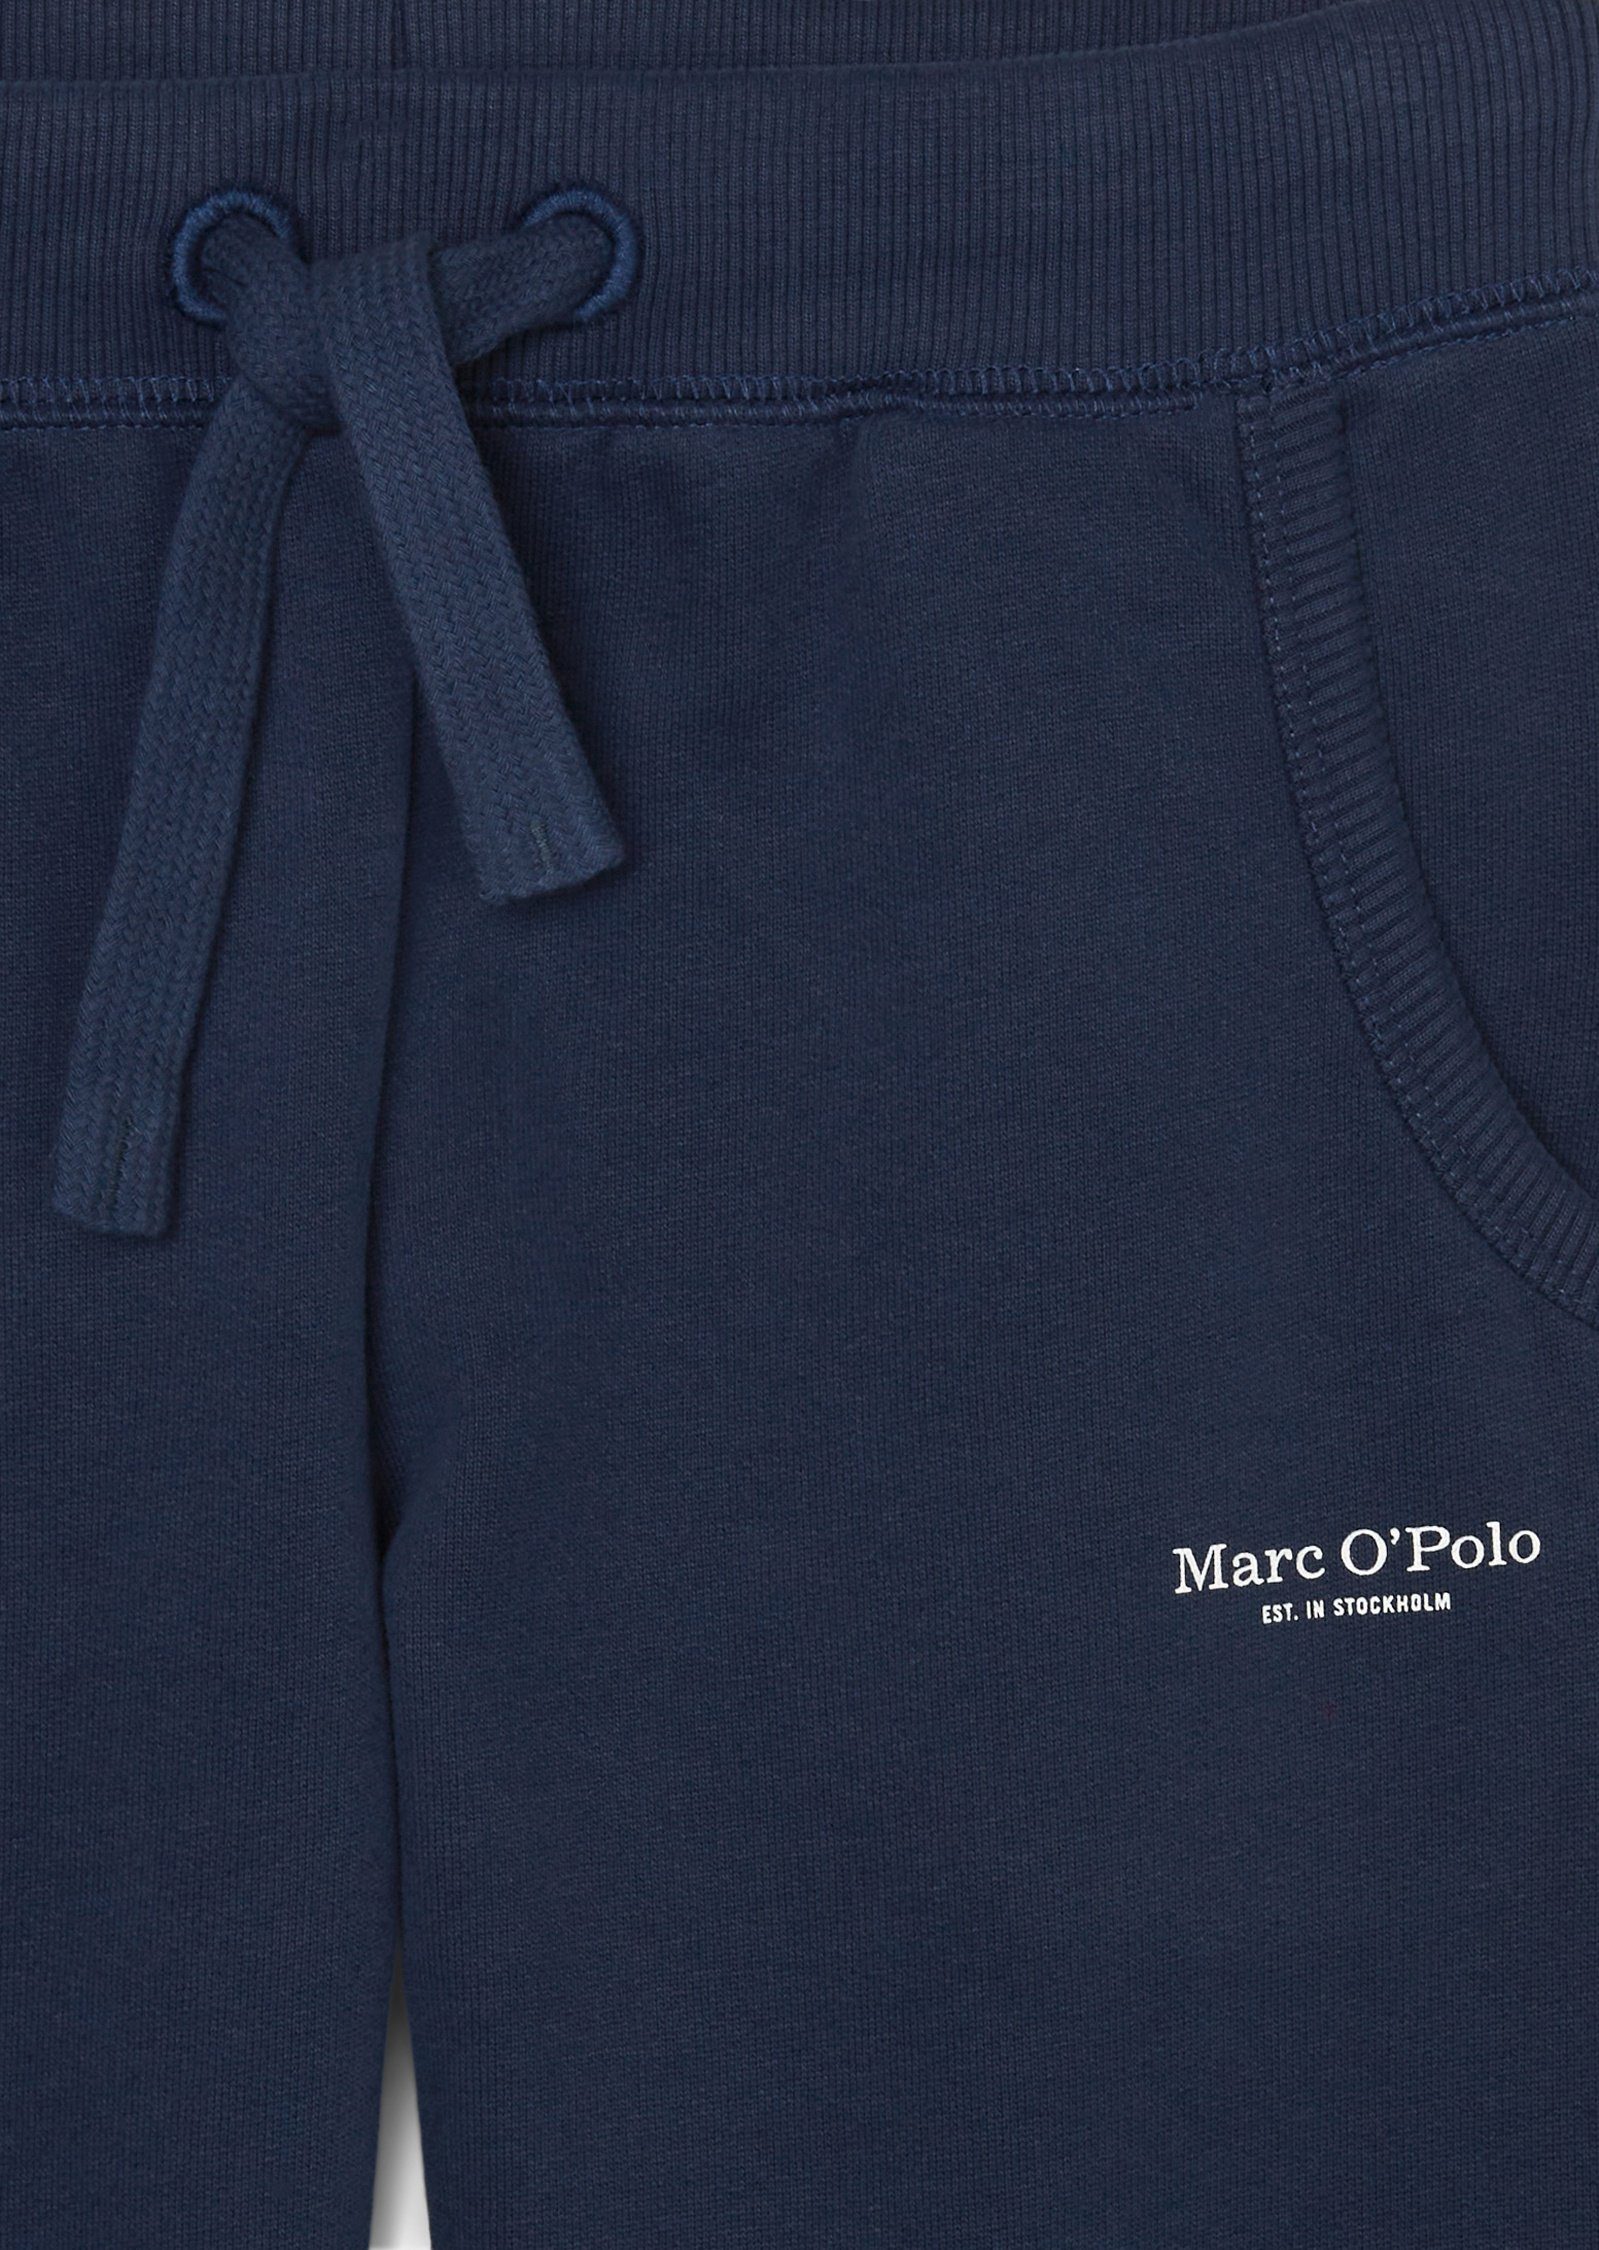 O'Polo Marc Bio-Baumwolle aus reiner 5-Pocket-Jeans